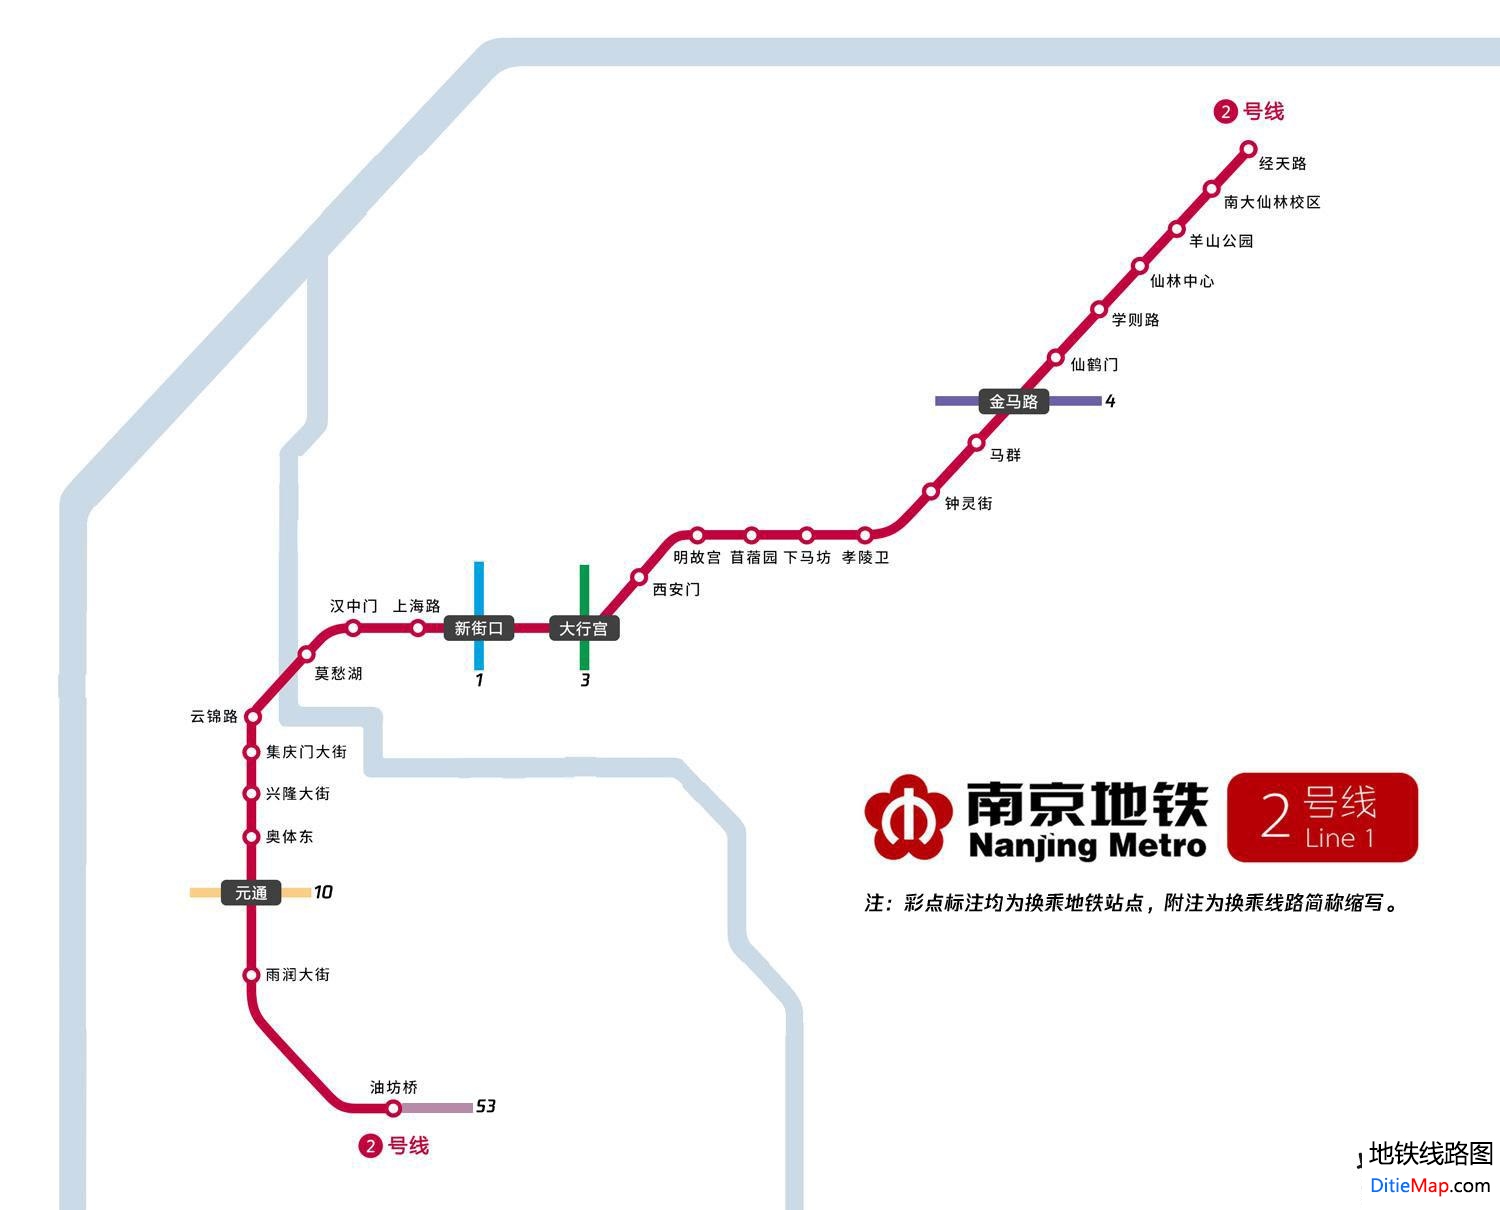 南京地铁2号线线路图 运营时间票价站点 查询下载 南京地铁2号线查询 南京地铁2号线运营时间 南京地铁2号线线路图 南京地铁2号线 南京地铁二号线 南京地铁线路图  第2张